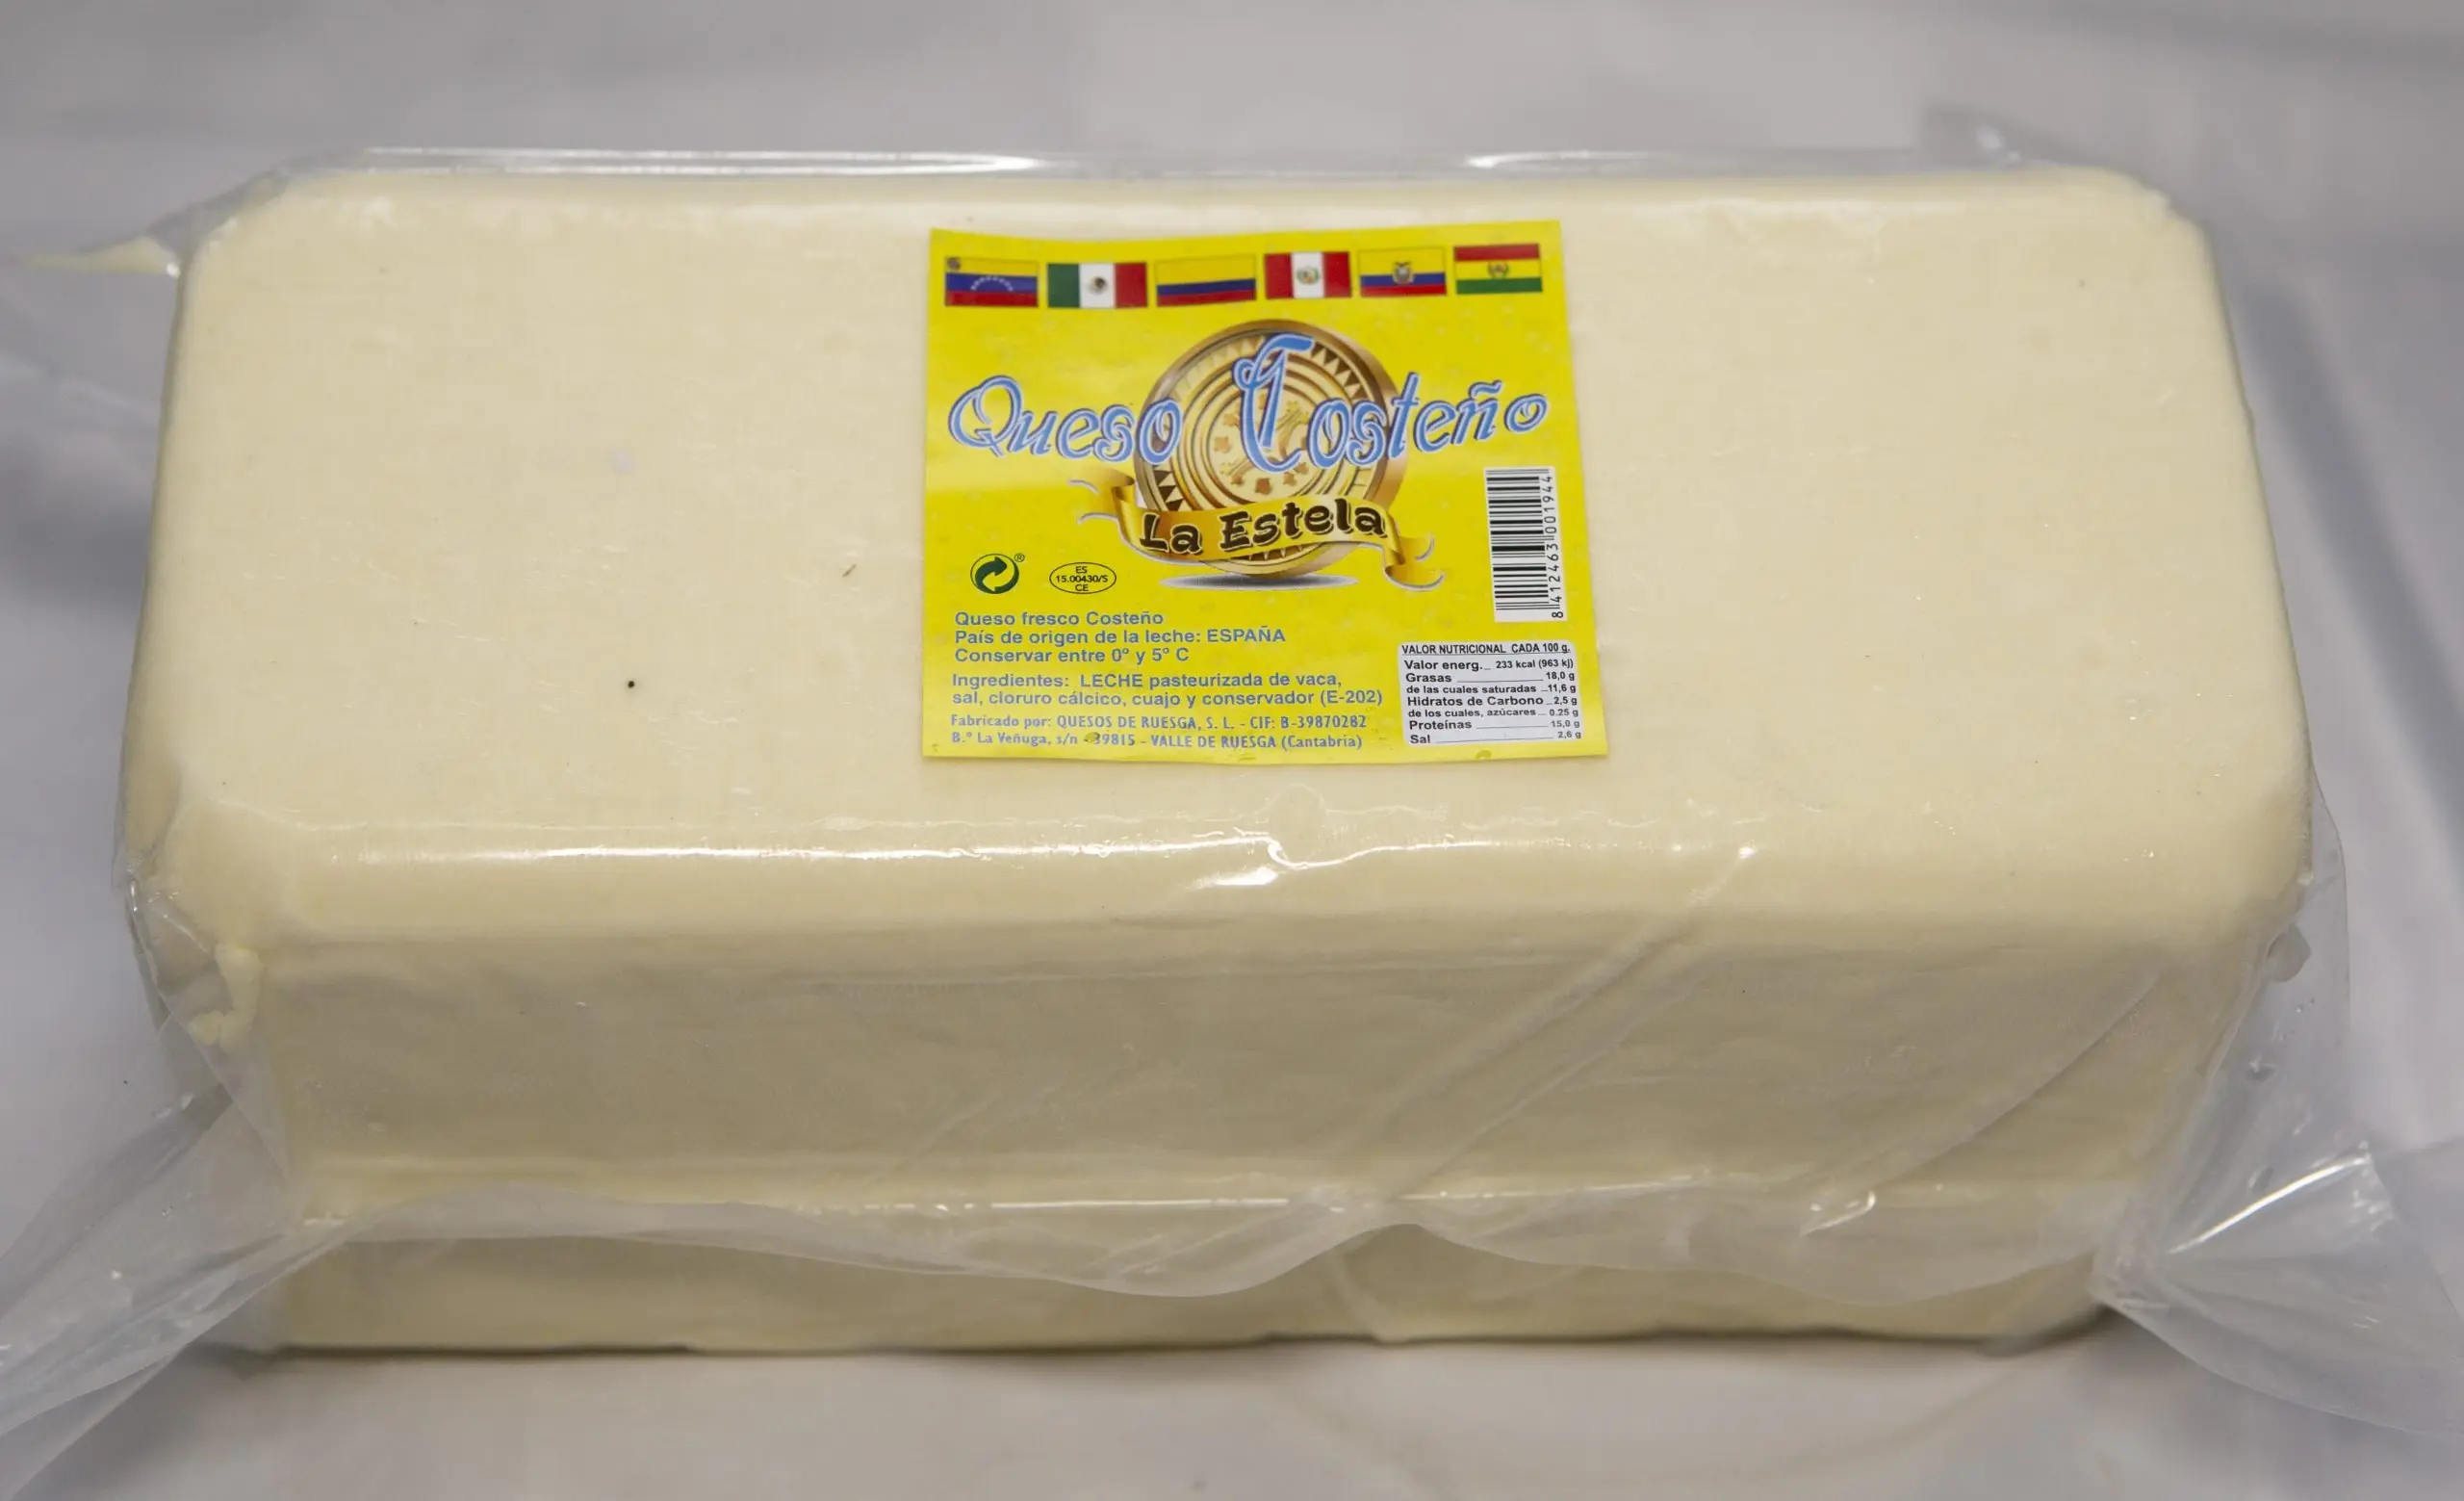 queso costeño en españa - Cómo se llama el queso Cotija en España